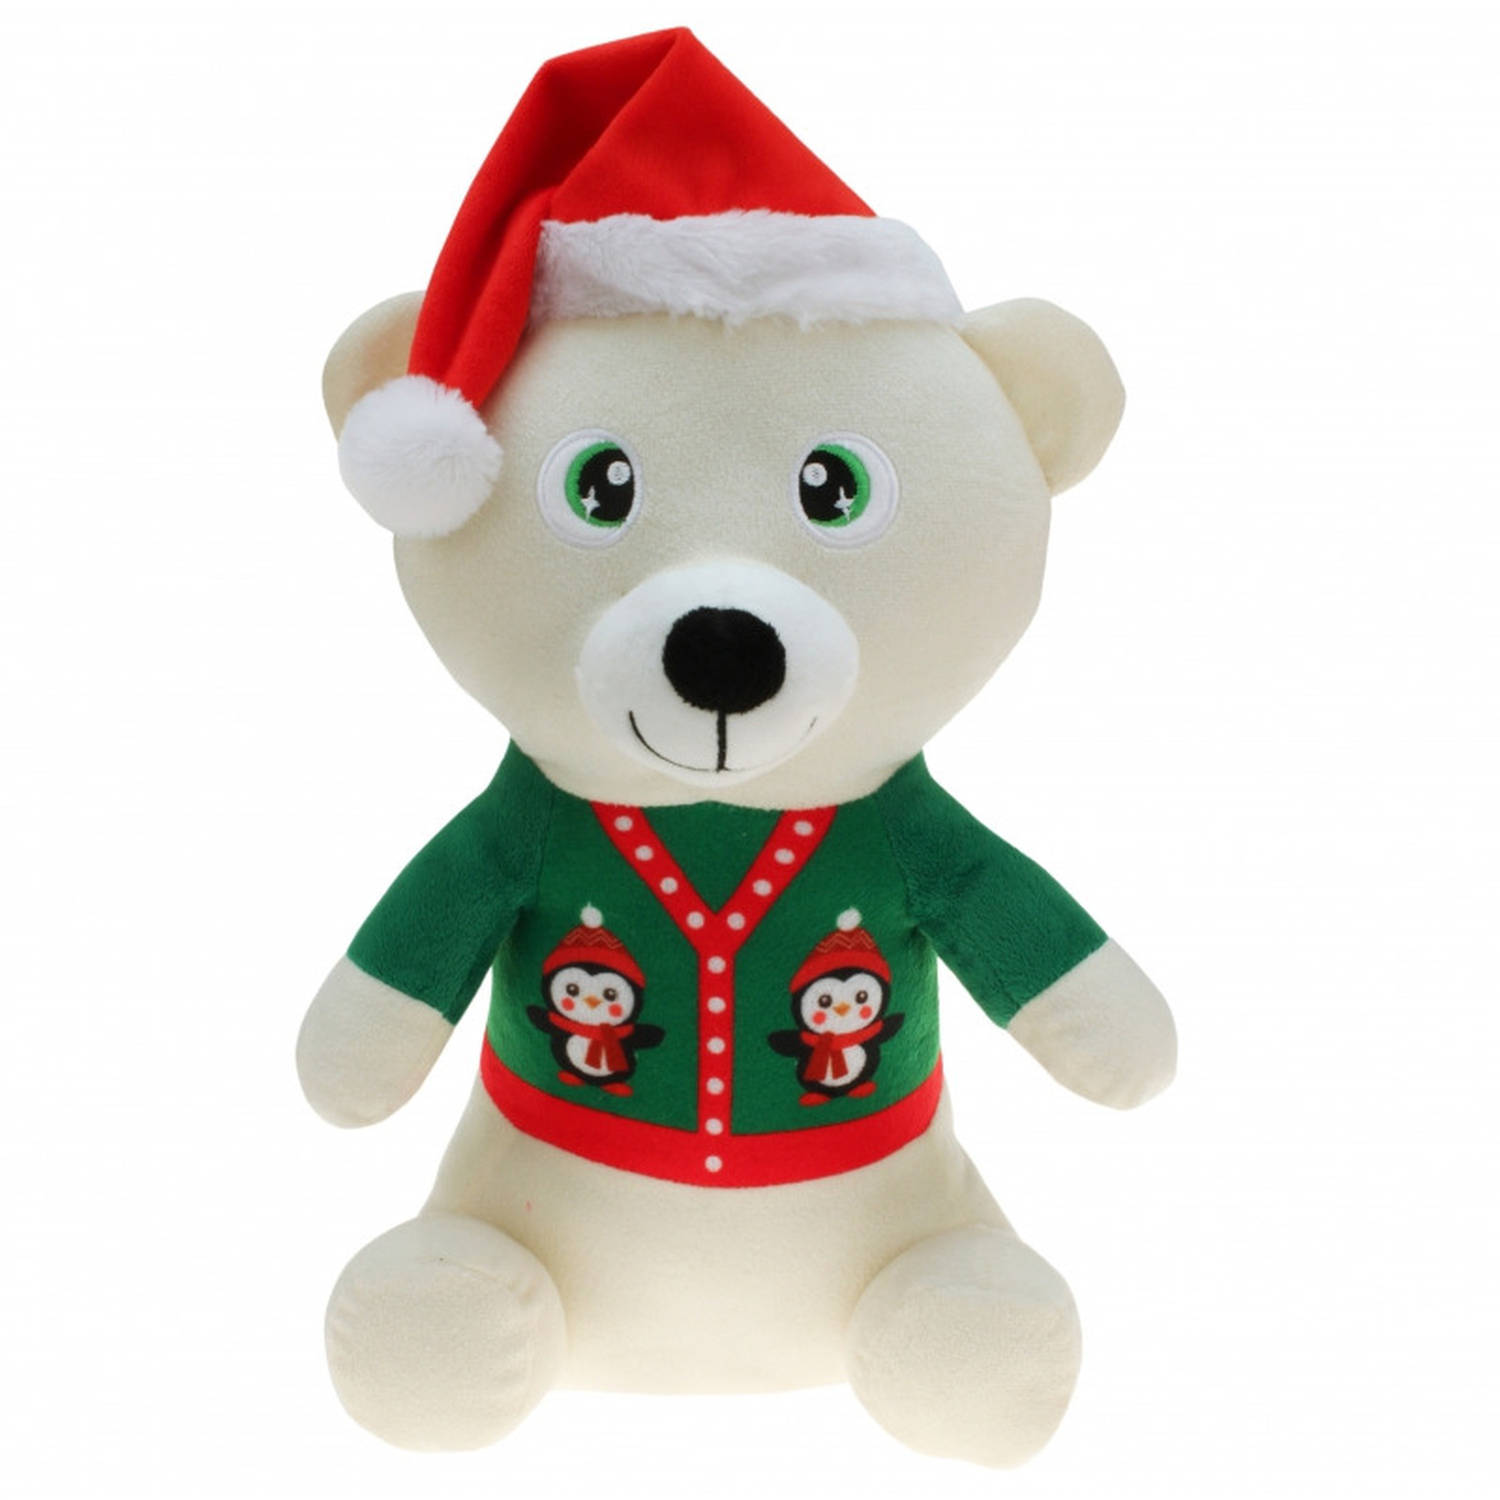 Witte beren knuffelbeer 30 cm kerstknuffels speelgoed Kerstman pop